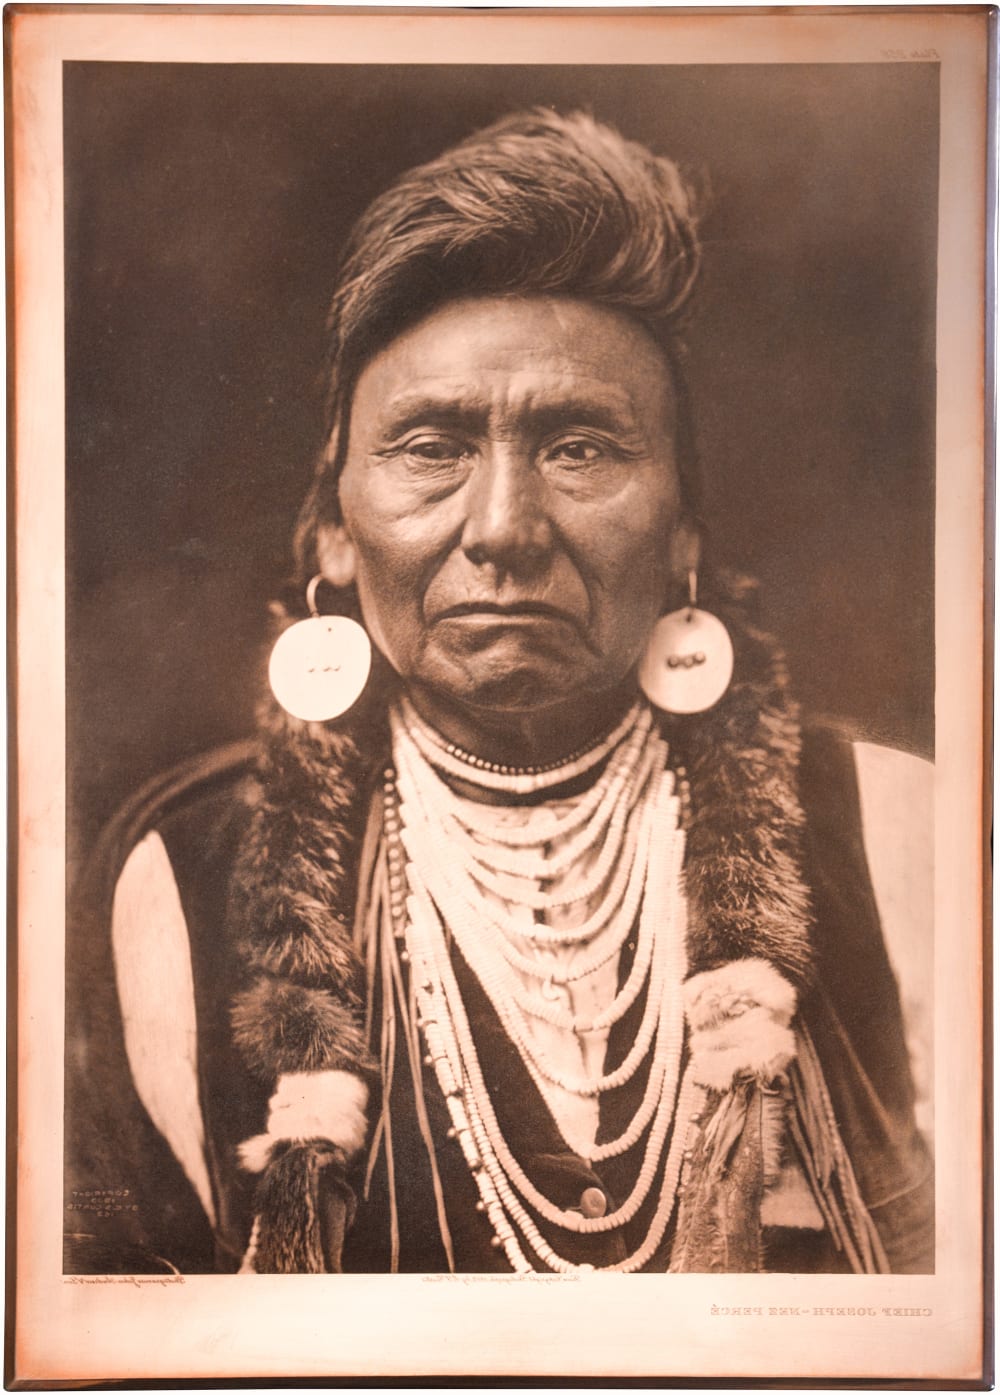 2 Free Promo Edward S e1145 Curtis Male Flathead Indian photo 